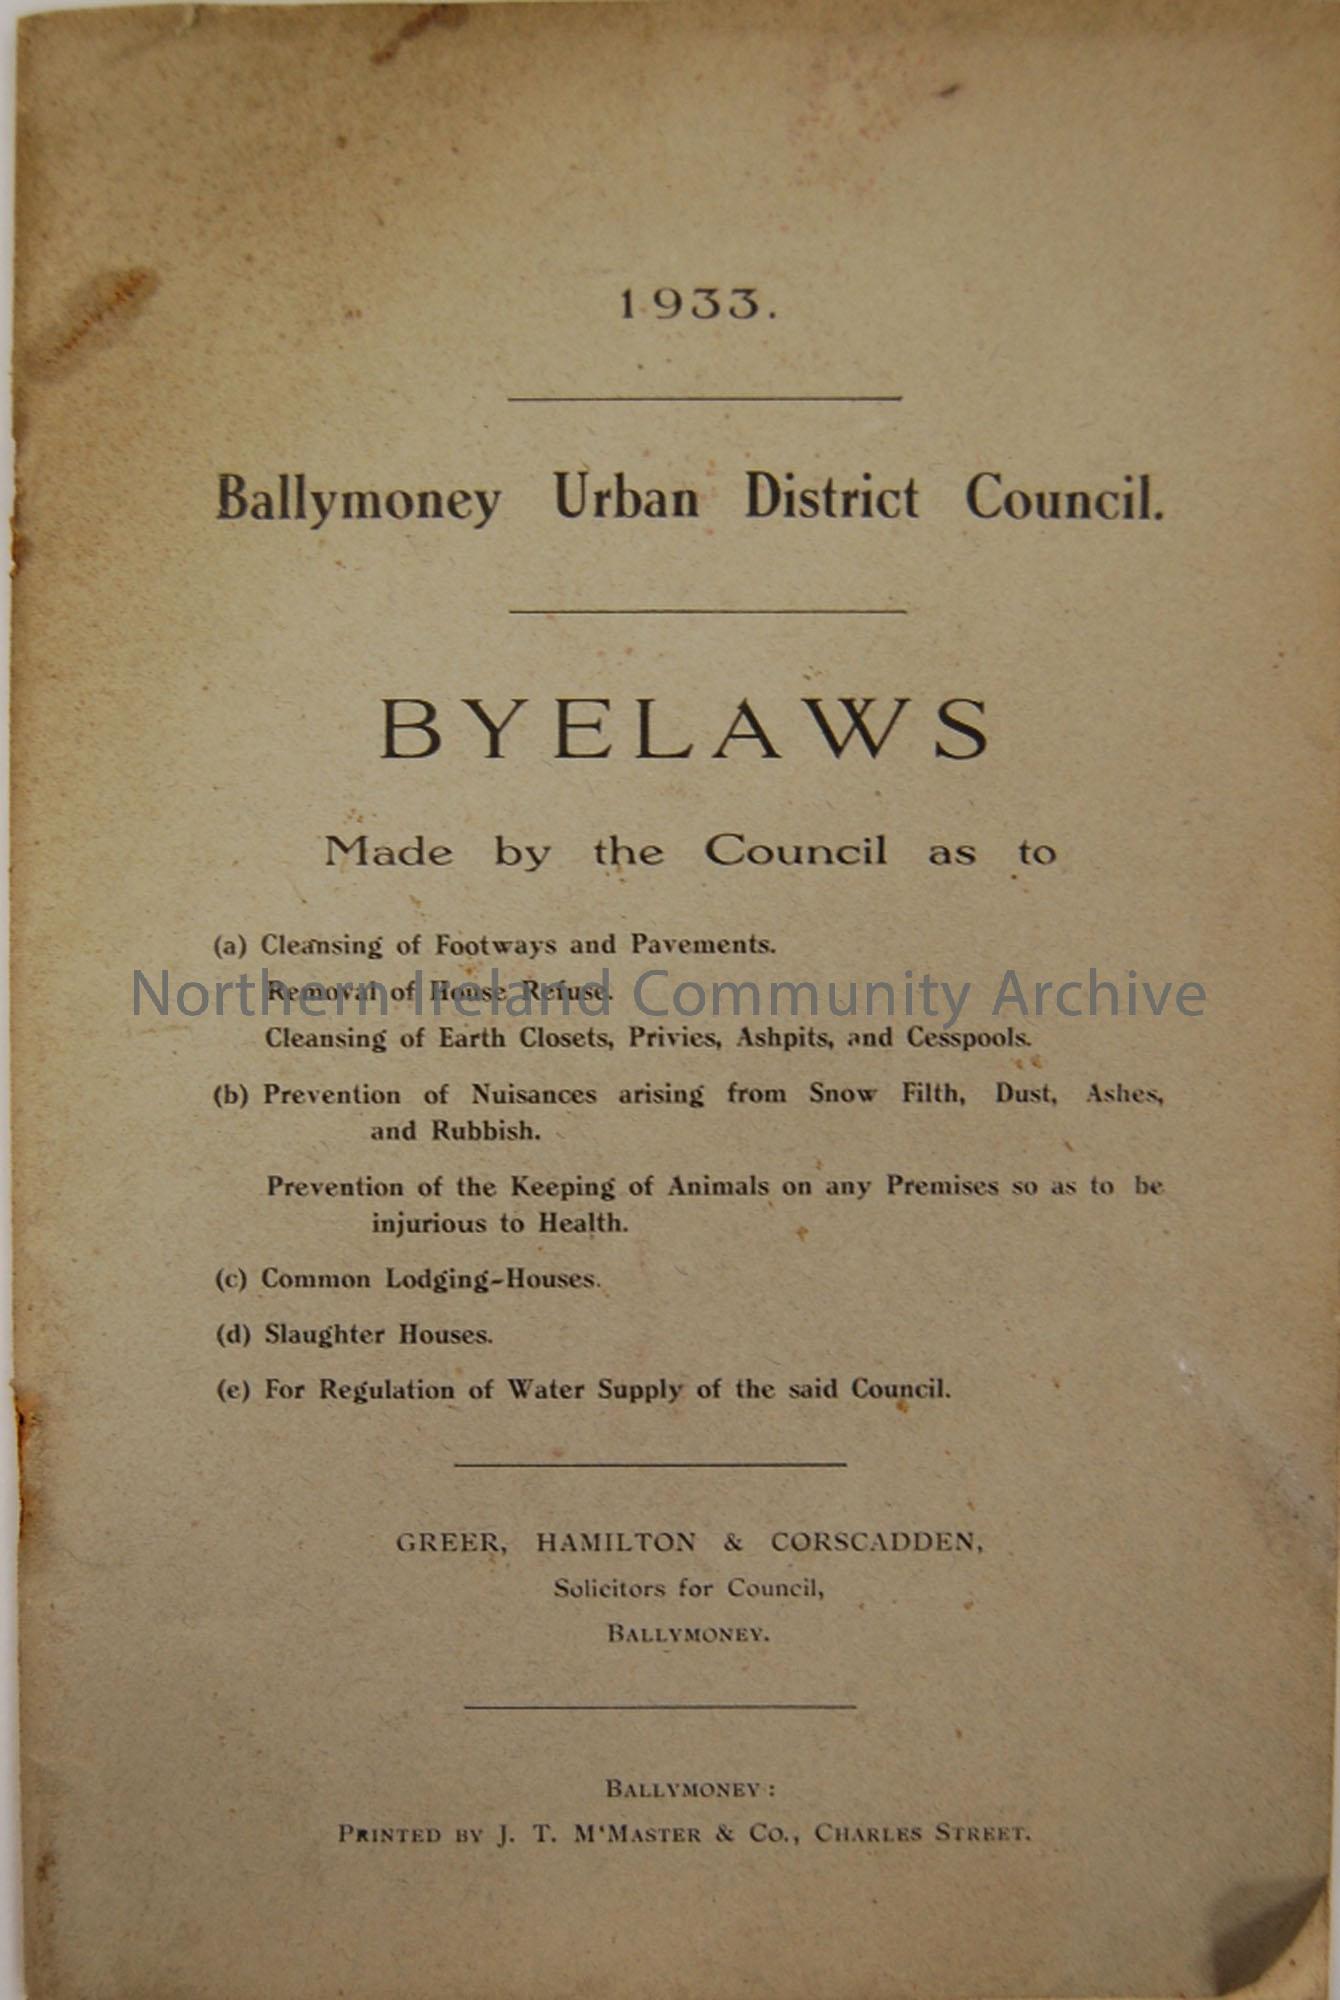 Ballymoney Urban District Council Bye-laws. 1933